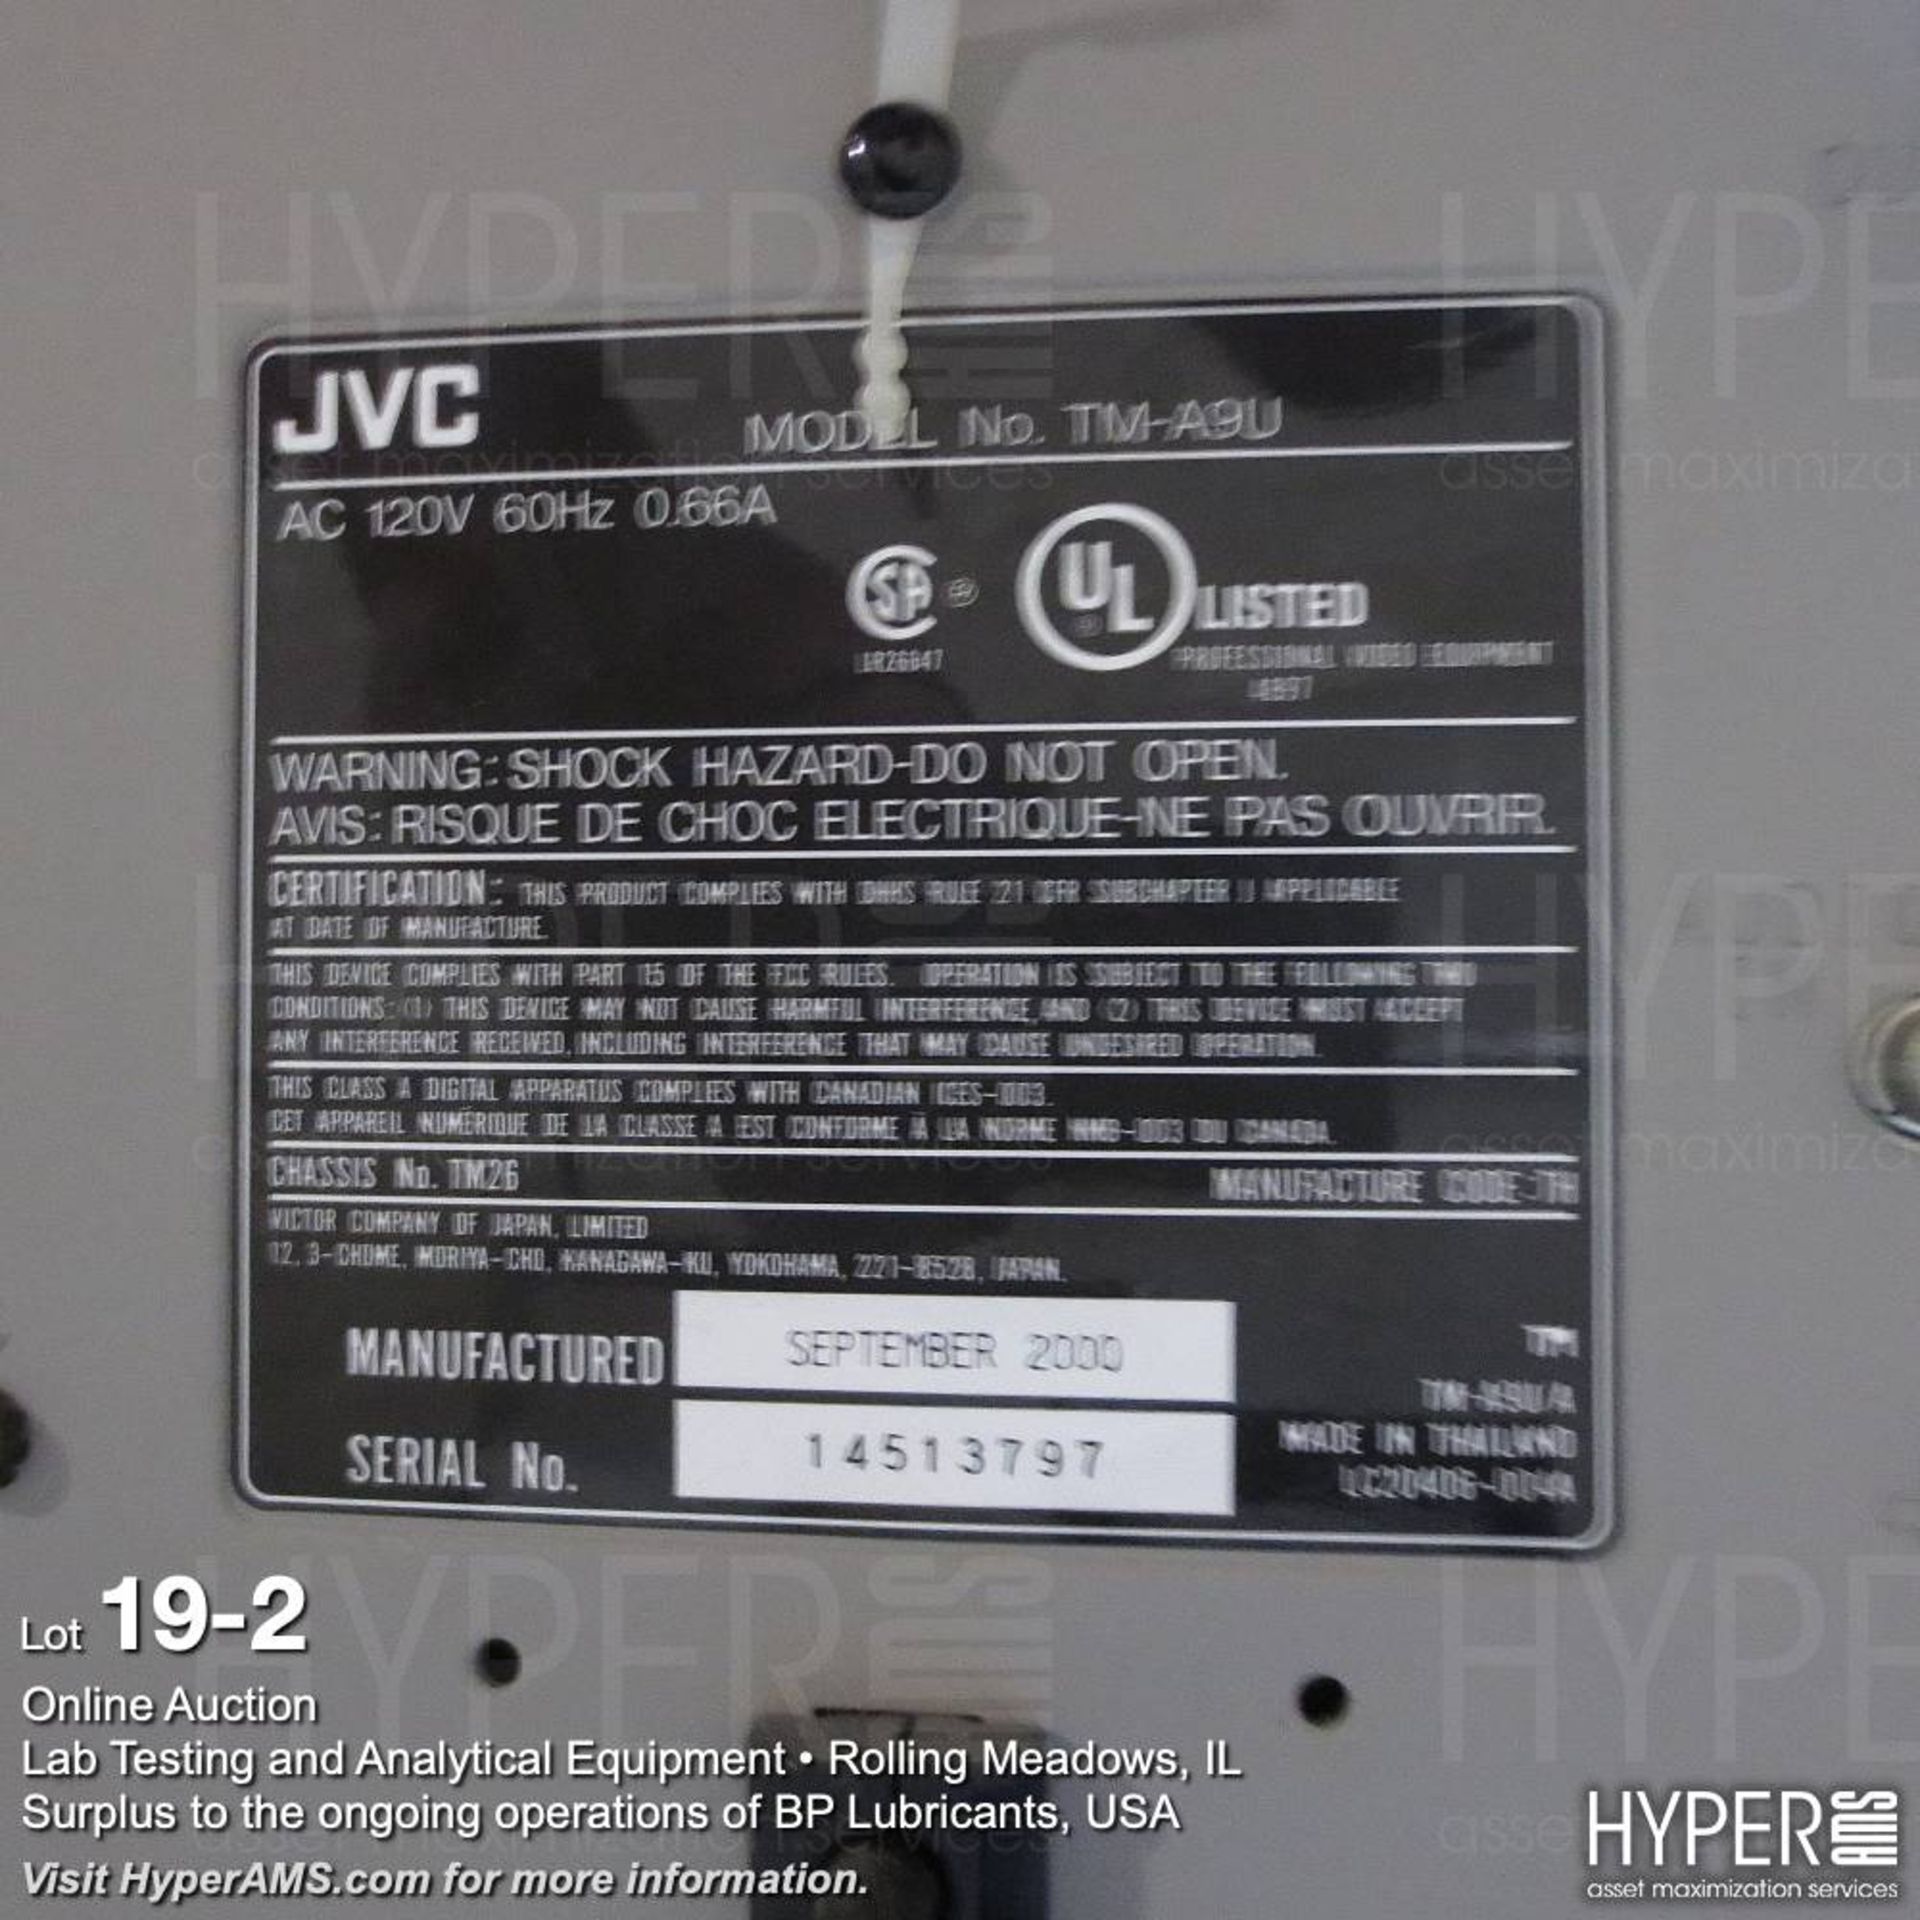 JVC model TM-A9U monitor - Image 2 of 2